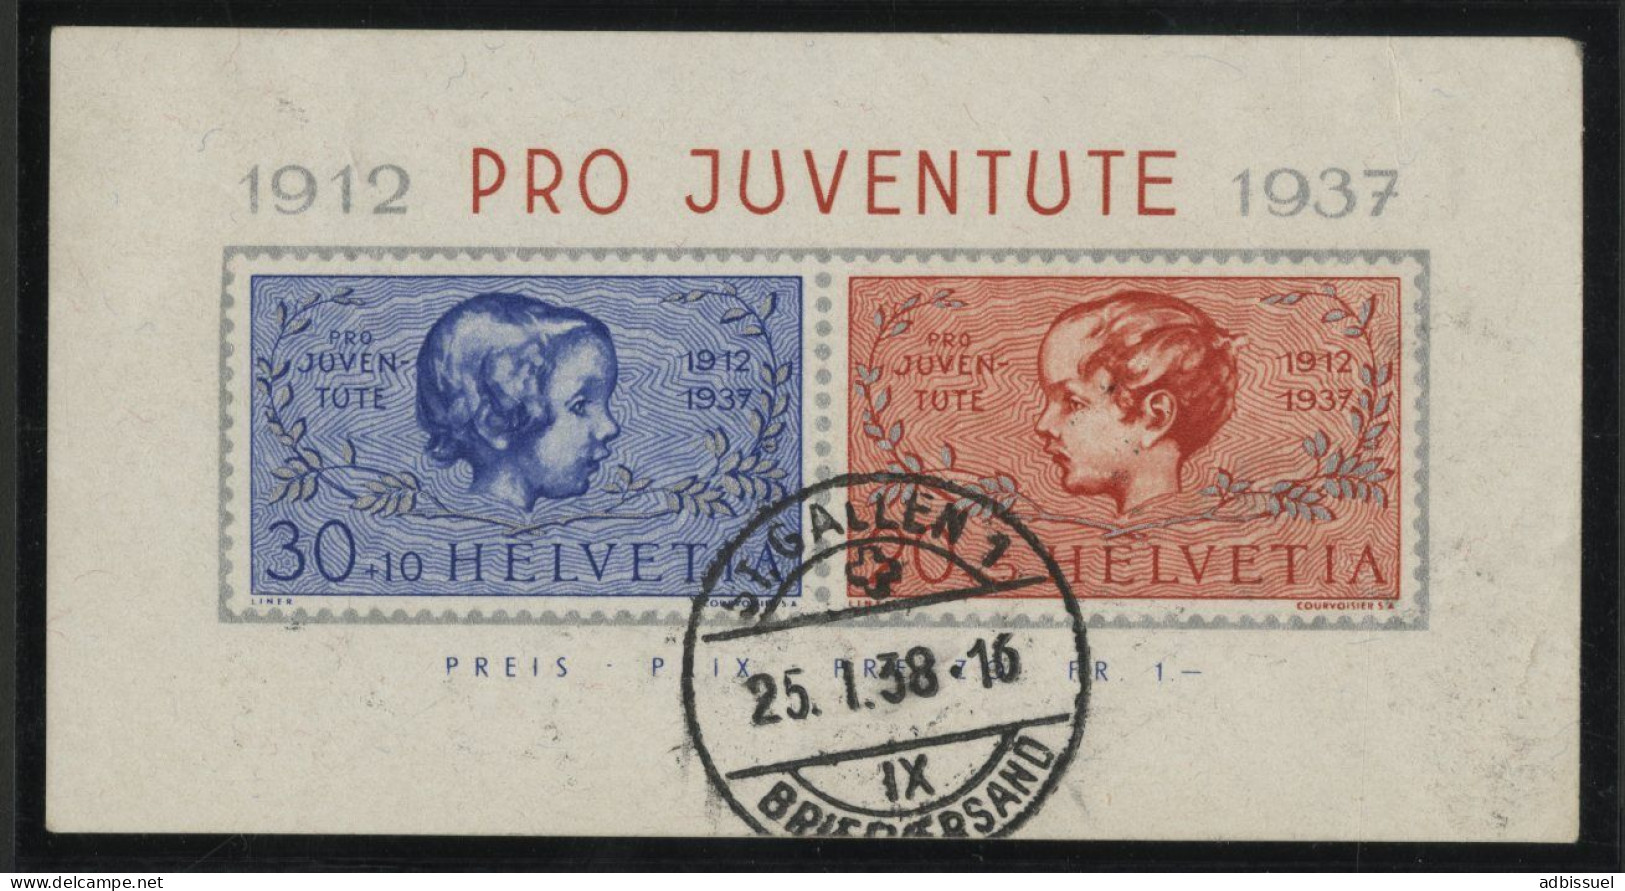 SUISSE Bloc N° 3 Oblitéré Cote 50 € 1912-PROJUVENTUTE-1937 Oblitération 25/1/38 St GALLEN - Blocs & Feuillets